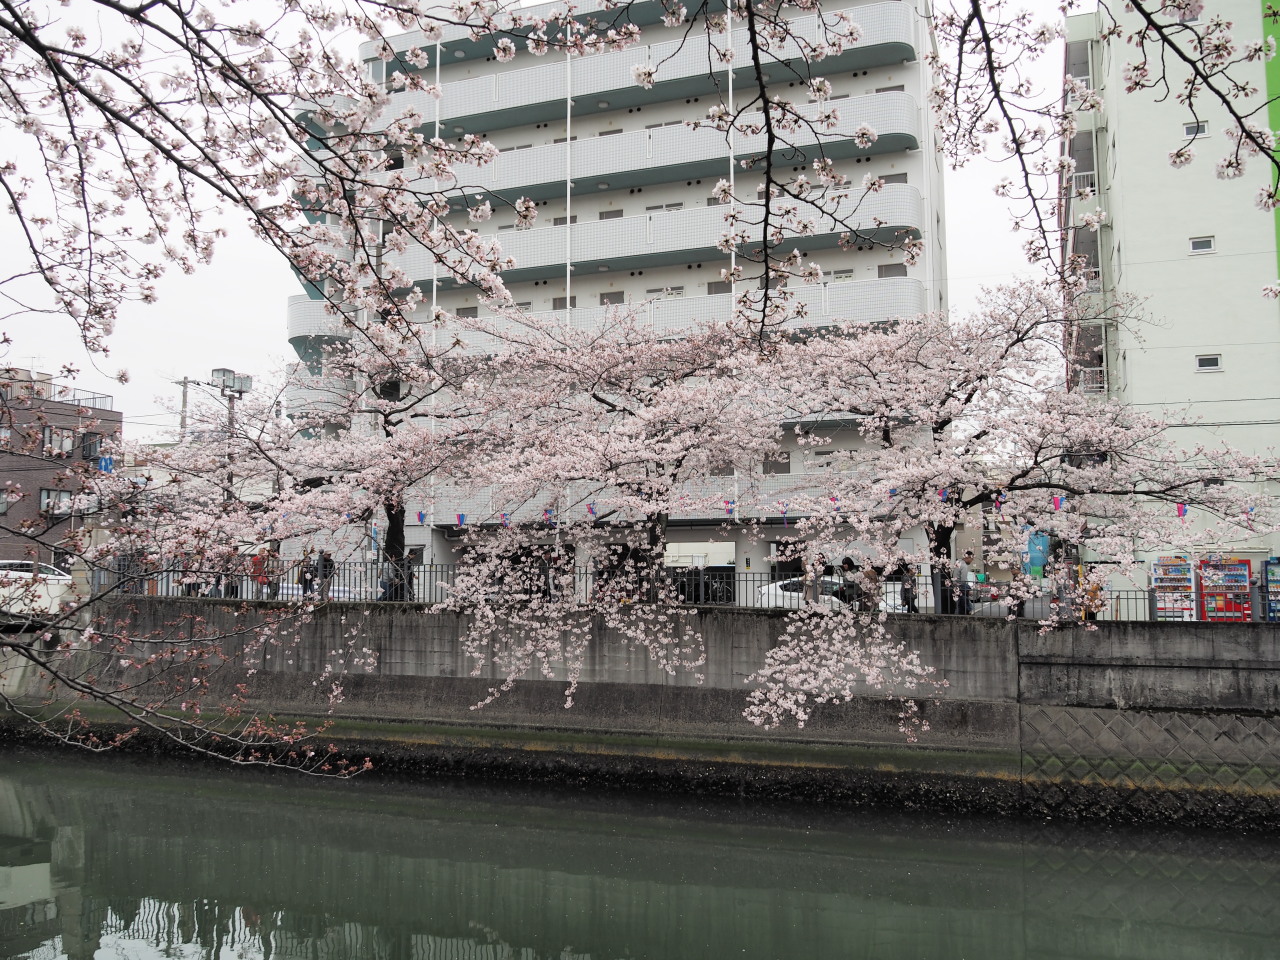 林立するビルの間に桜並木と川だけが、少し浮いている感じ